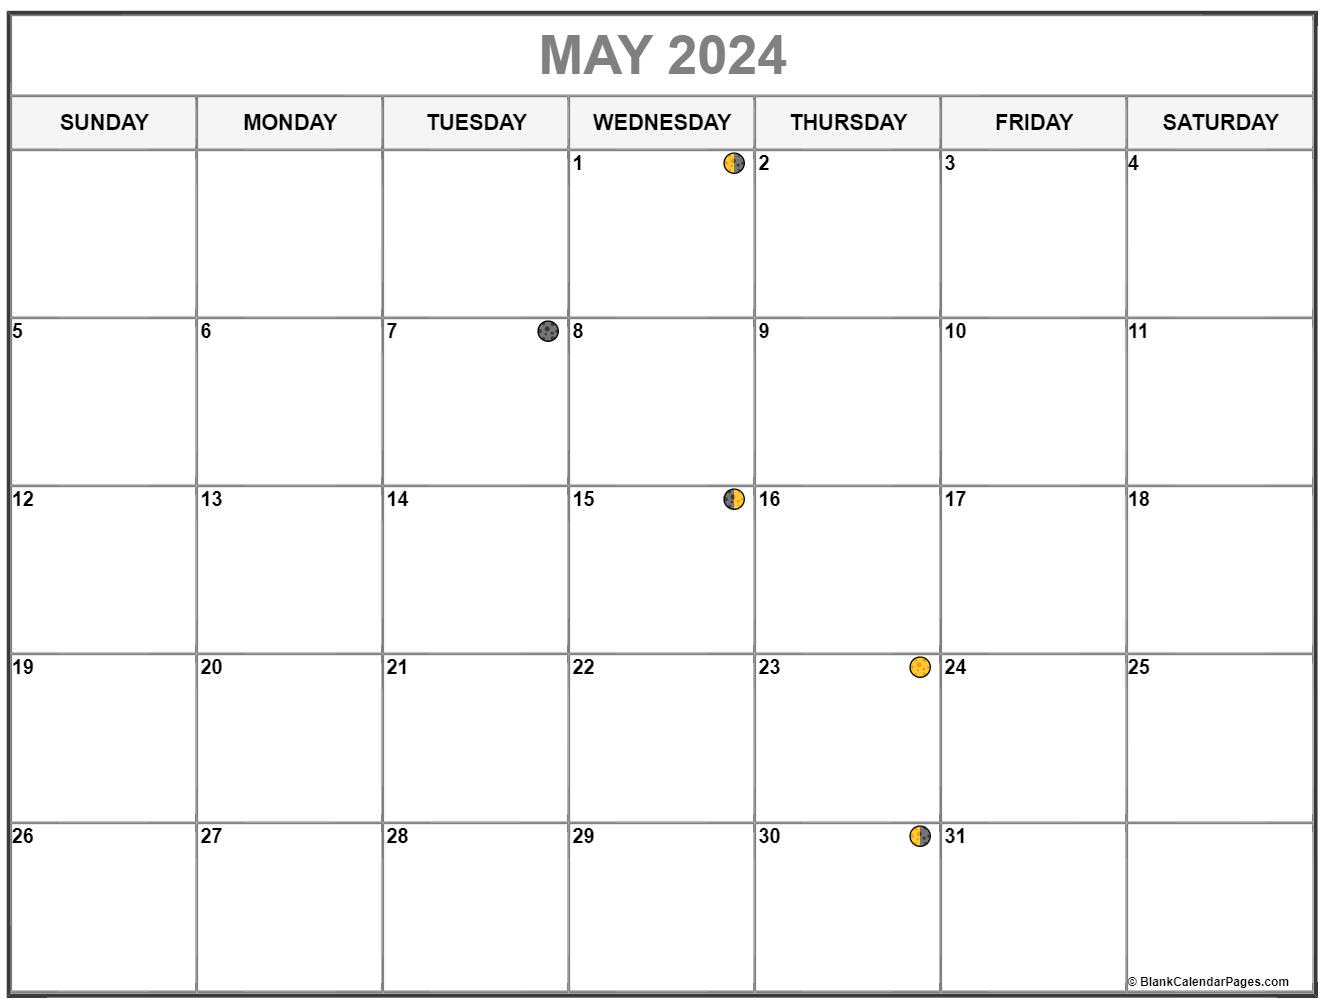 May 2023 Lunar Calendar Get Calender 2023 Update